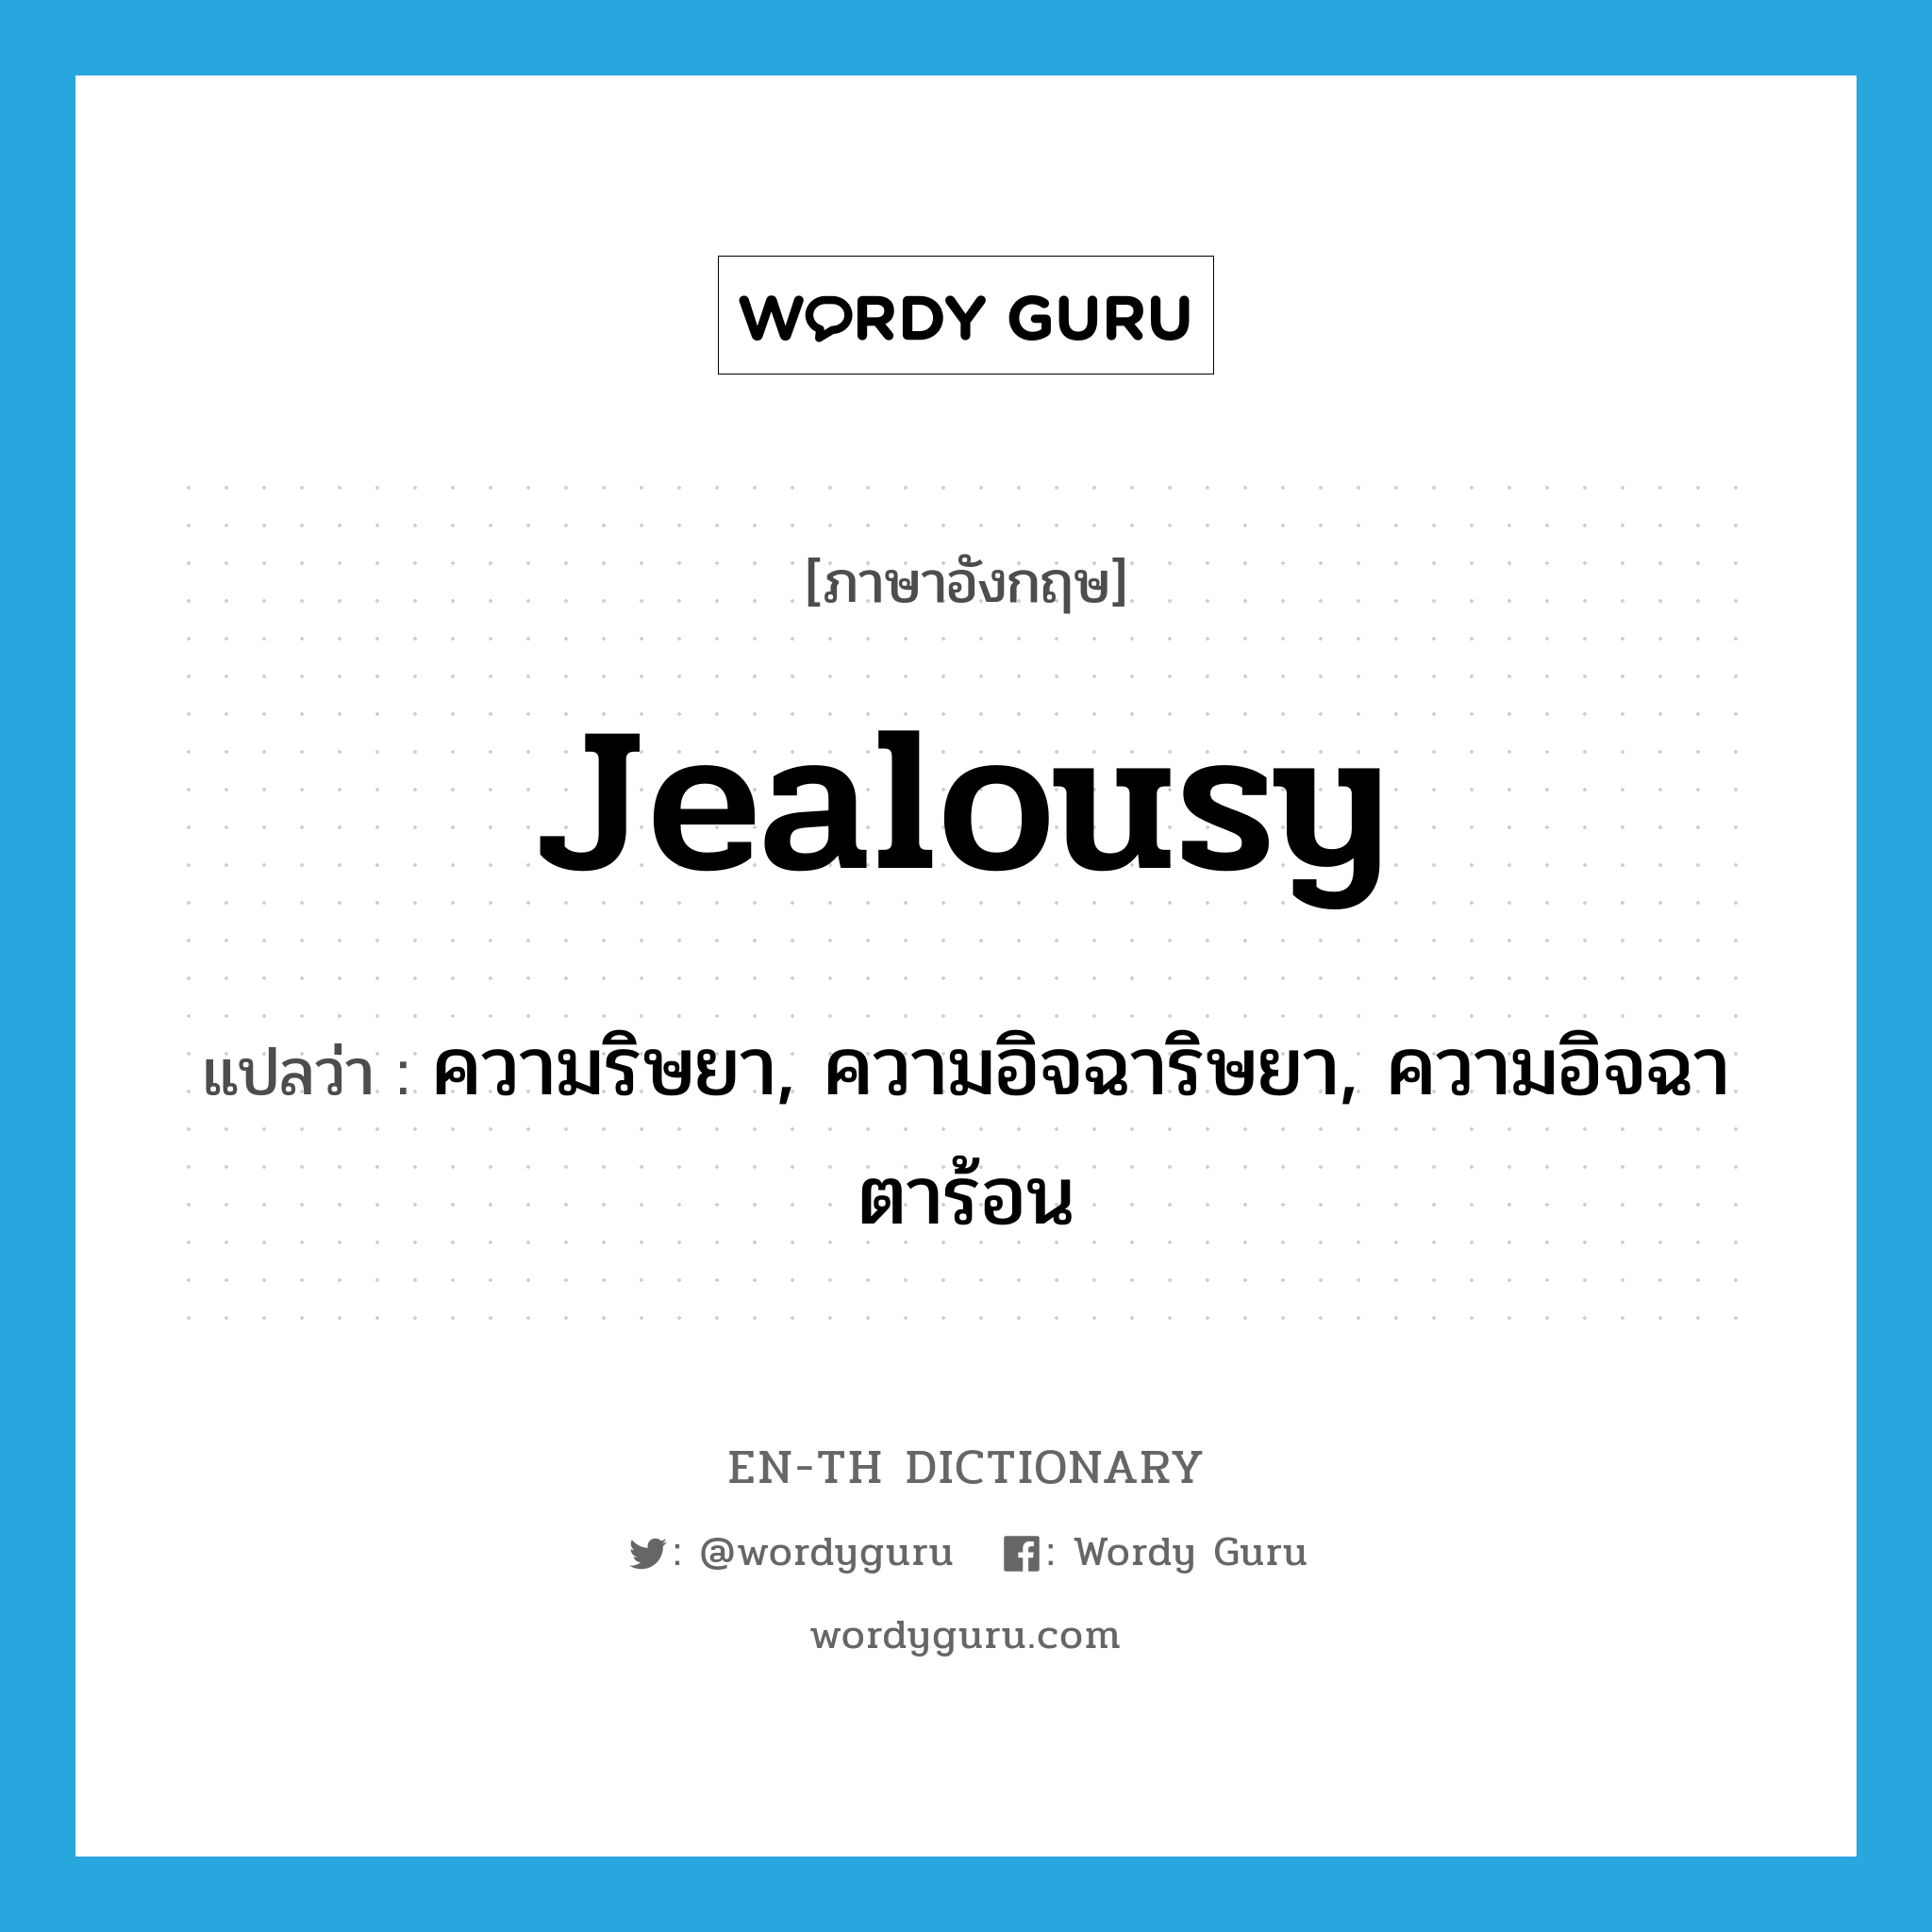 jealousy แปลว่า?, คำศัพท์ภาษาอังกฤษ jealousy แปลว่า ความริษยา, ความอิจฉาริษยา, ความอิจฉาตาร้อน ประเภท N หมวด N